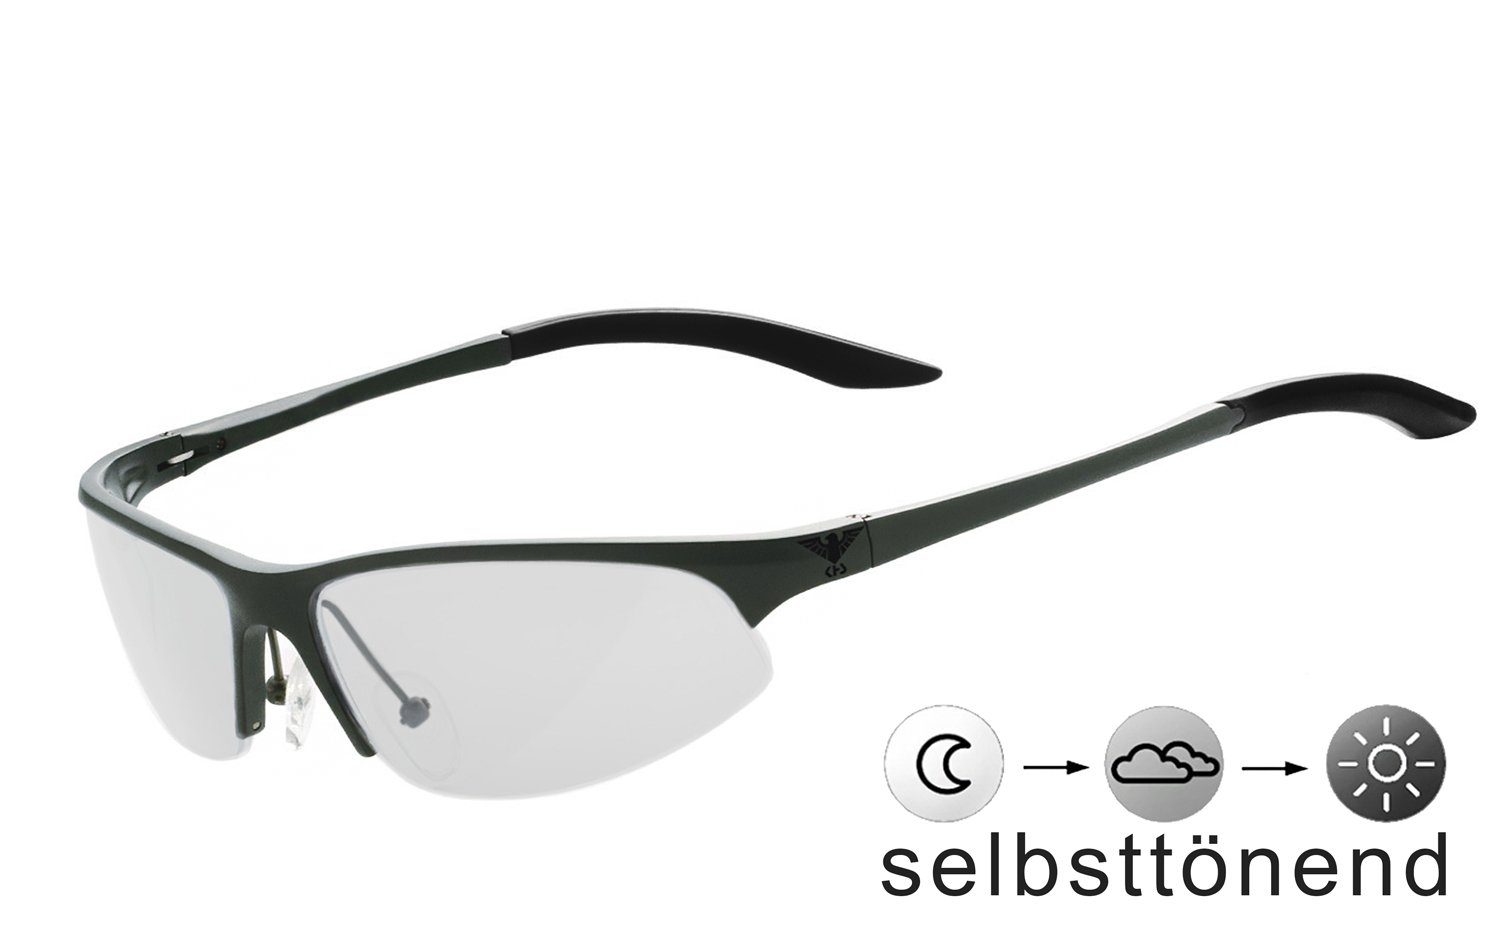 KHS Sportbrille KHS-140g - selbsttönend, schnell selbsttönende Gläser